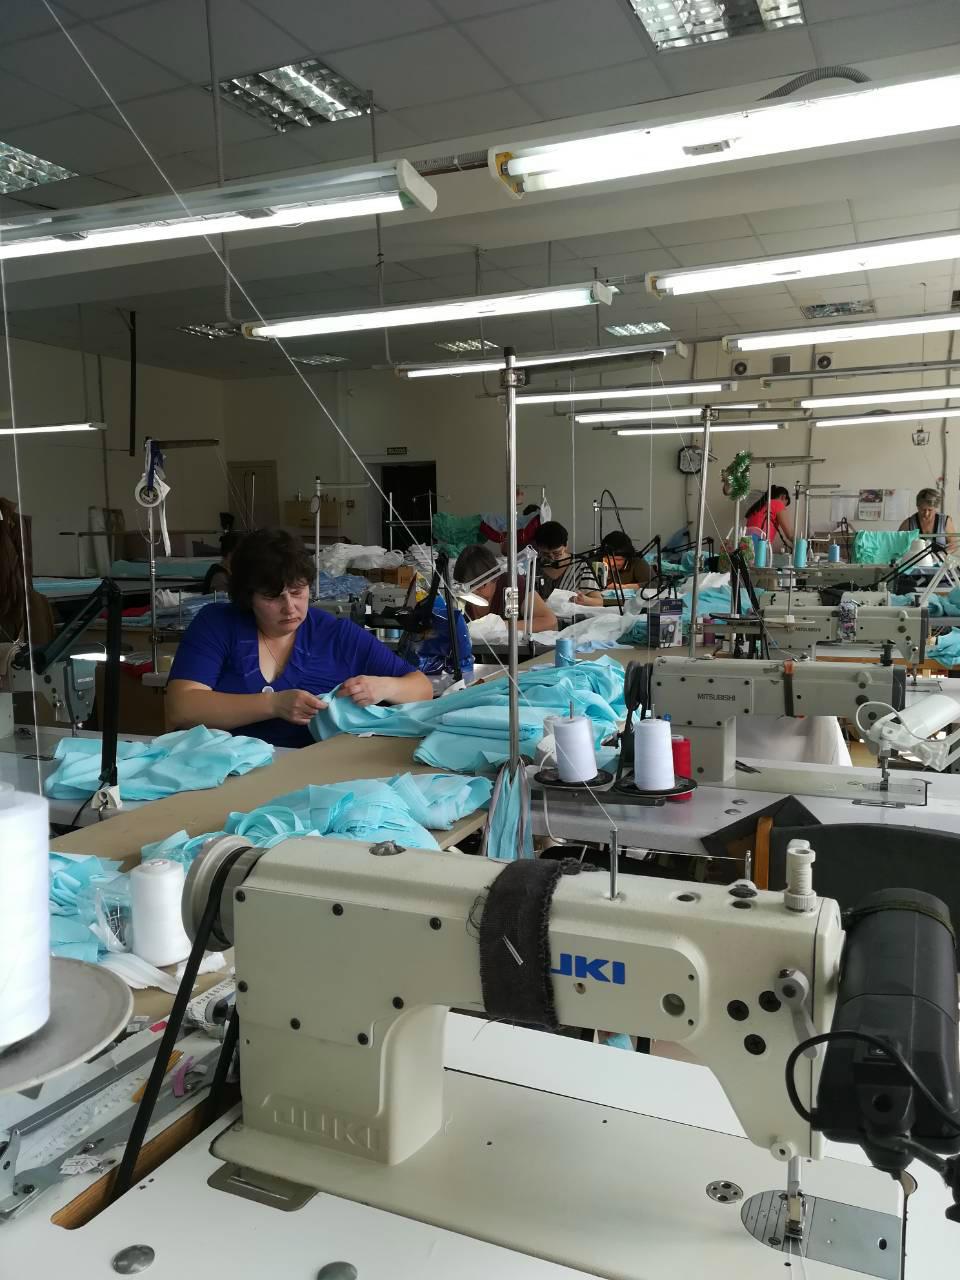 Сайт швейника. Швейная фабрика Березники. Швейный цех. Швейная промышленность. Продукция швейной фабрики.